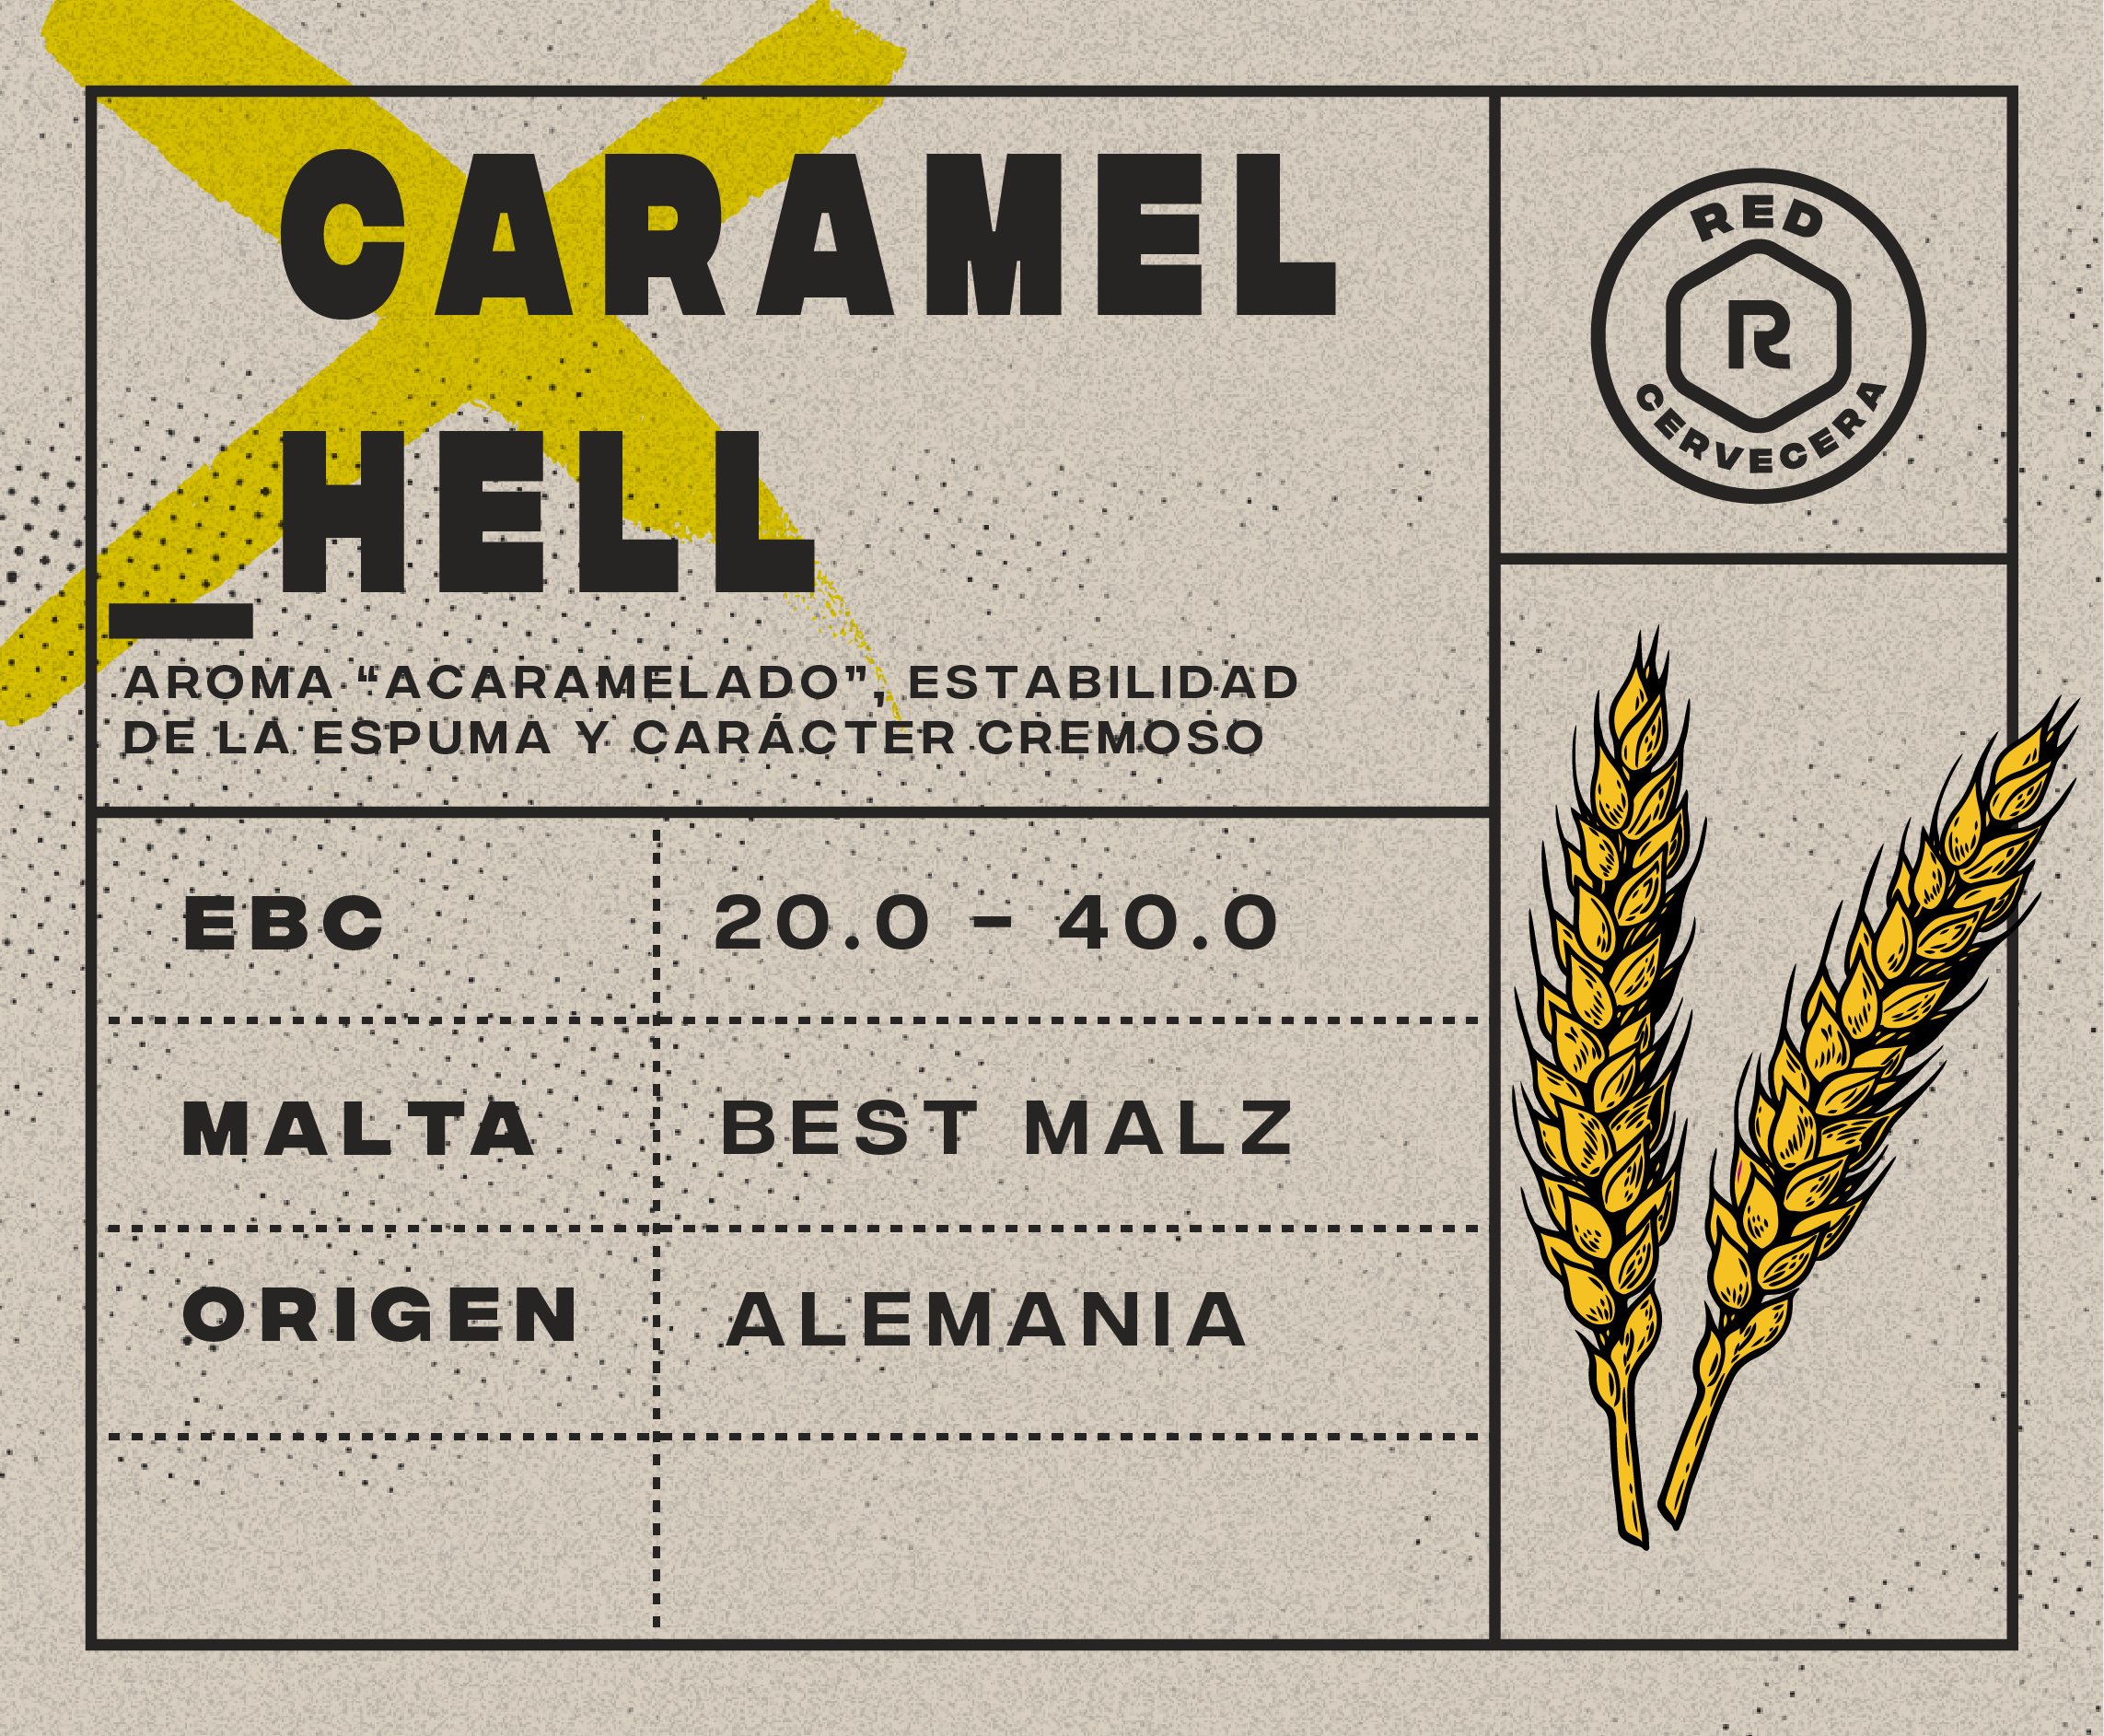 13-Caramel Hell (EBC 20.0-40.0) (1 Kg.)